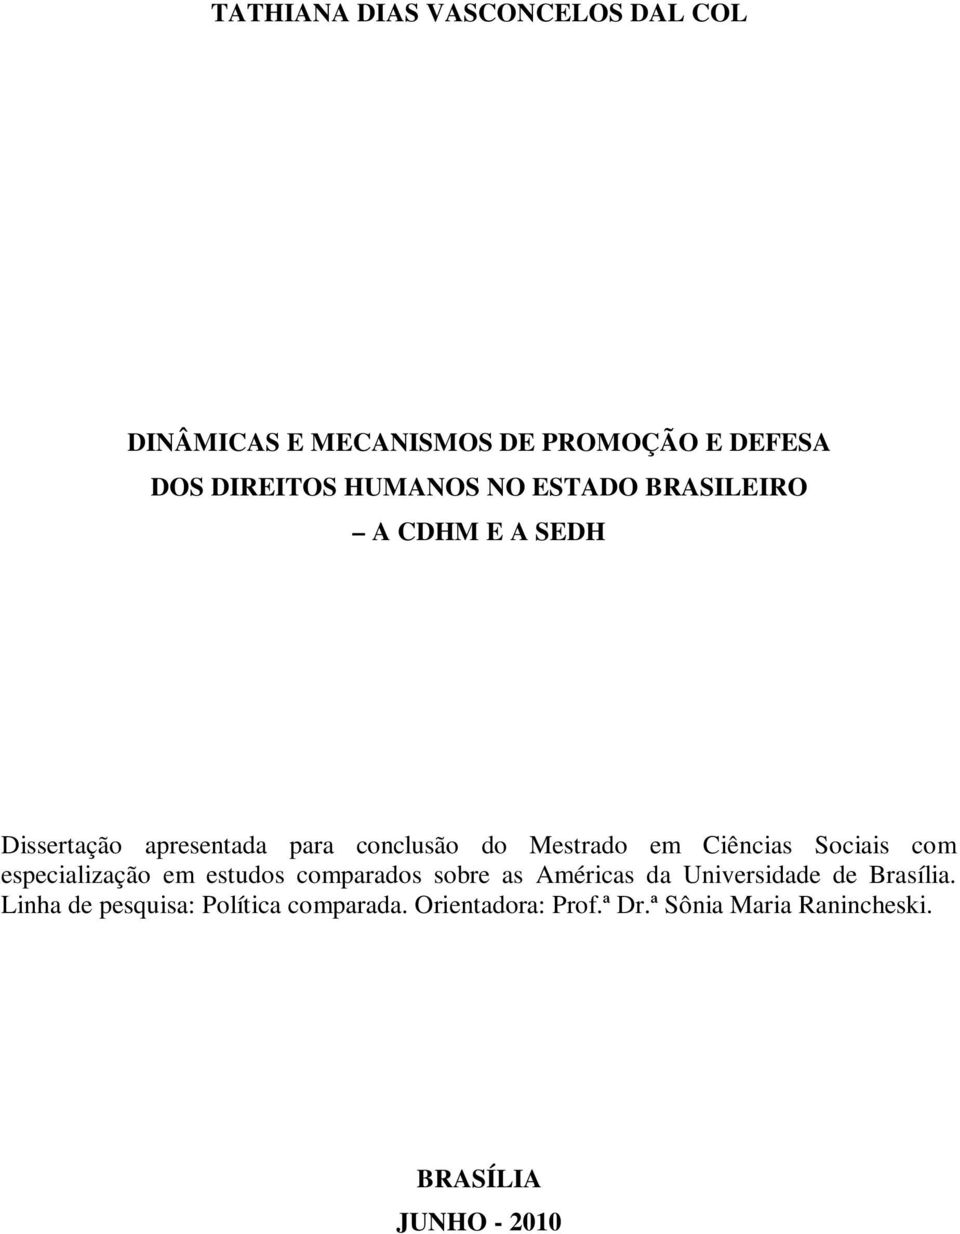 Sociais com especialização em estudos comparados sobre as Américas da Universidade de Brasília.